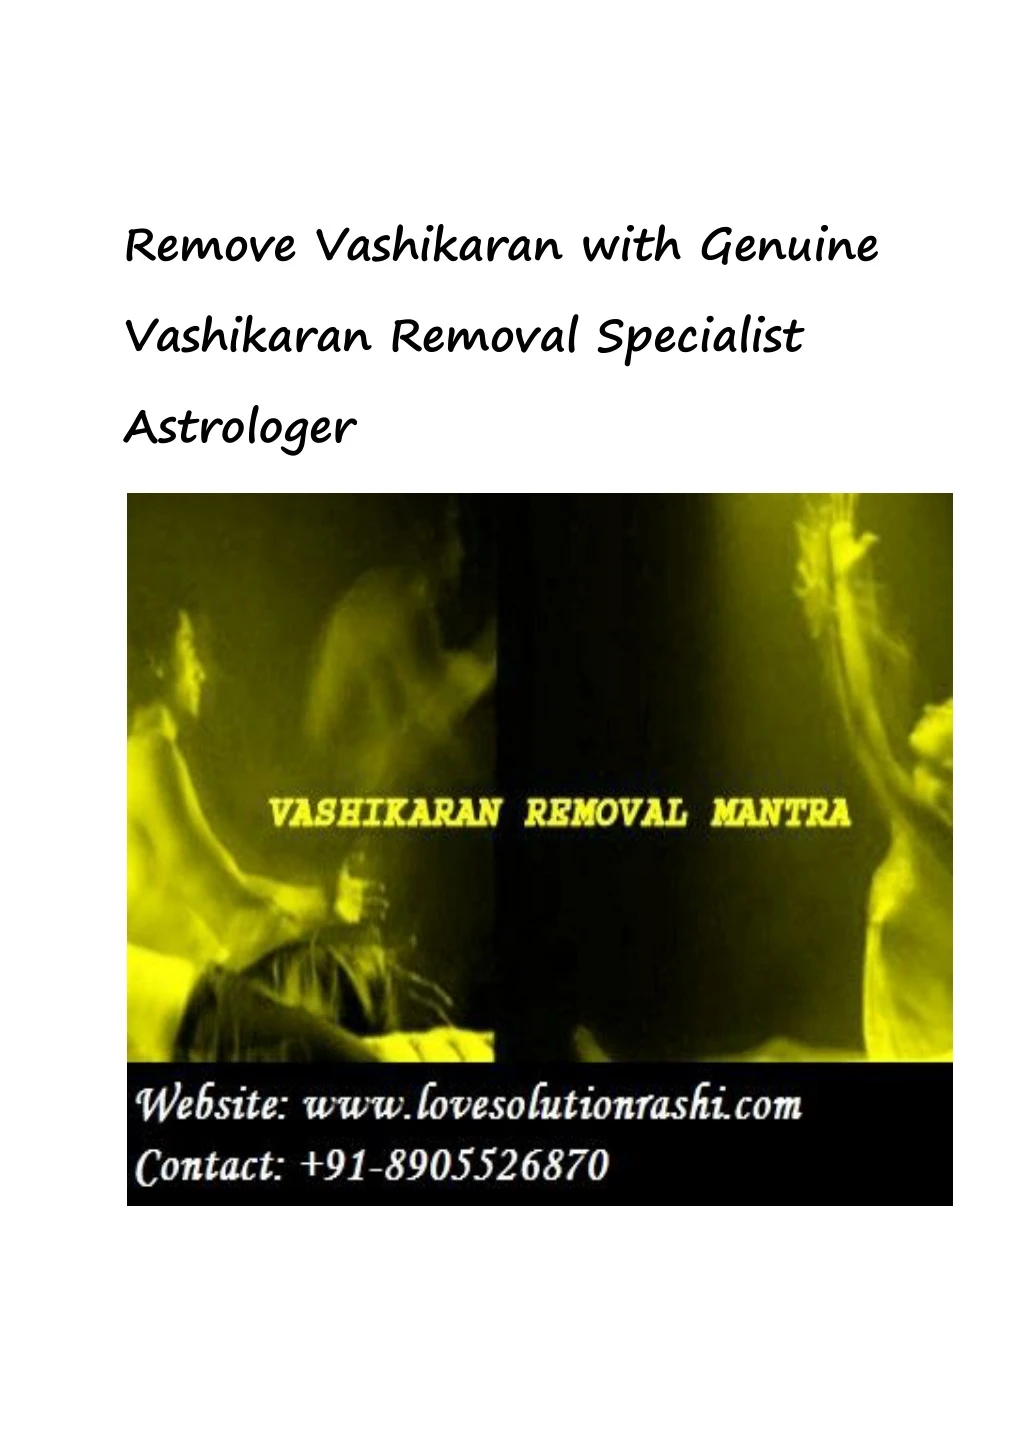 remove vashikaran with genuine vashikaran removal